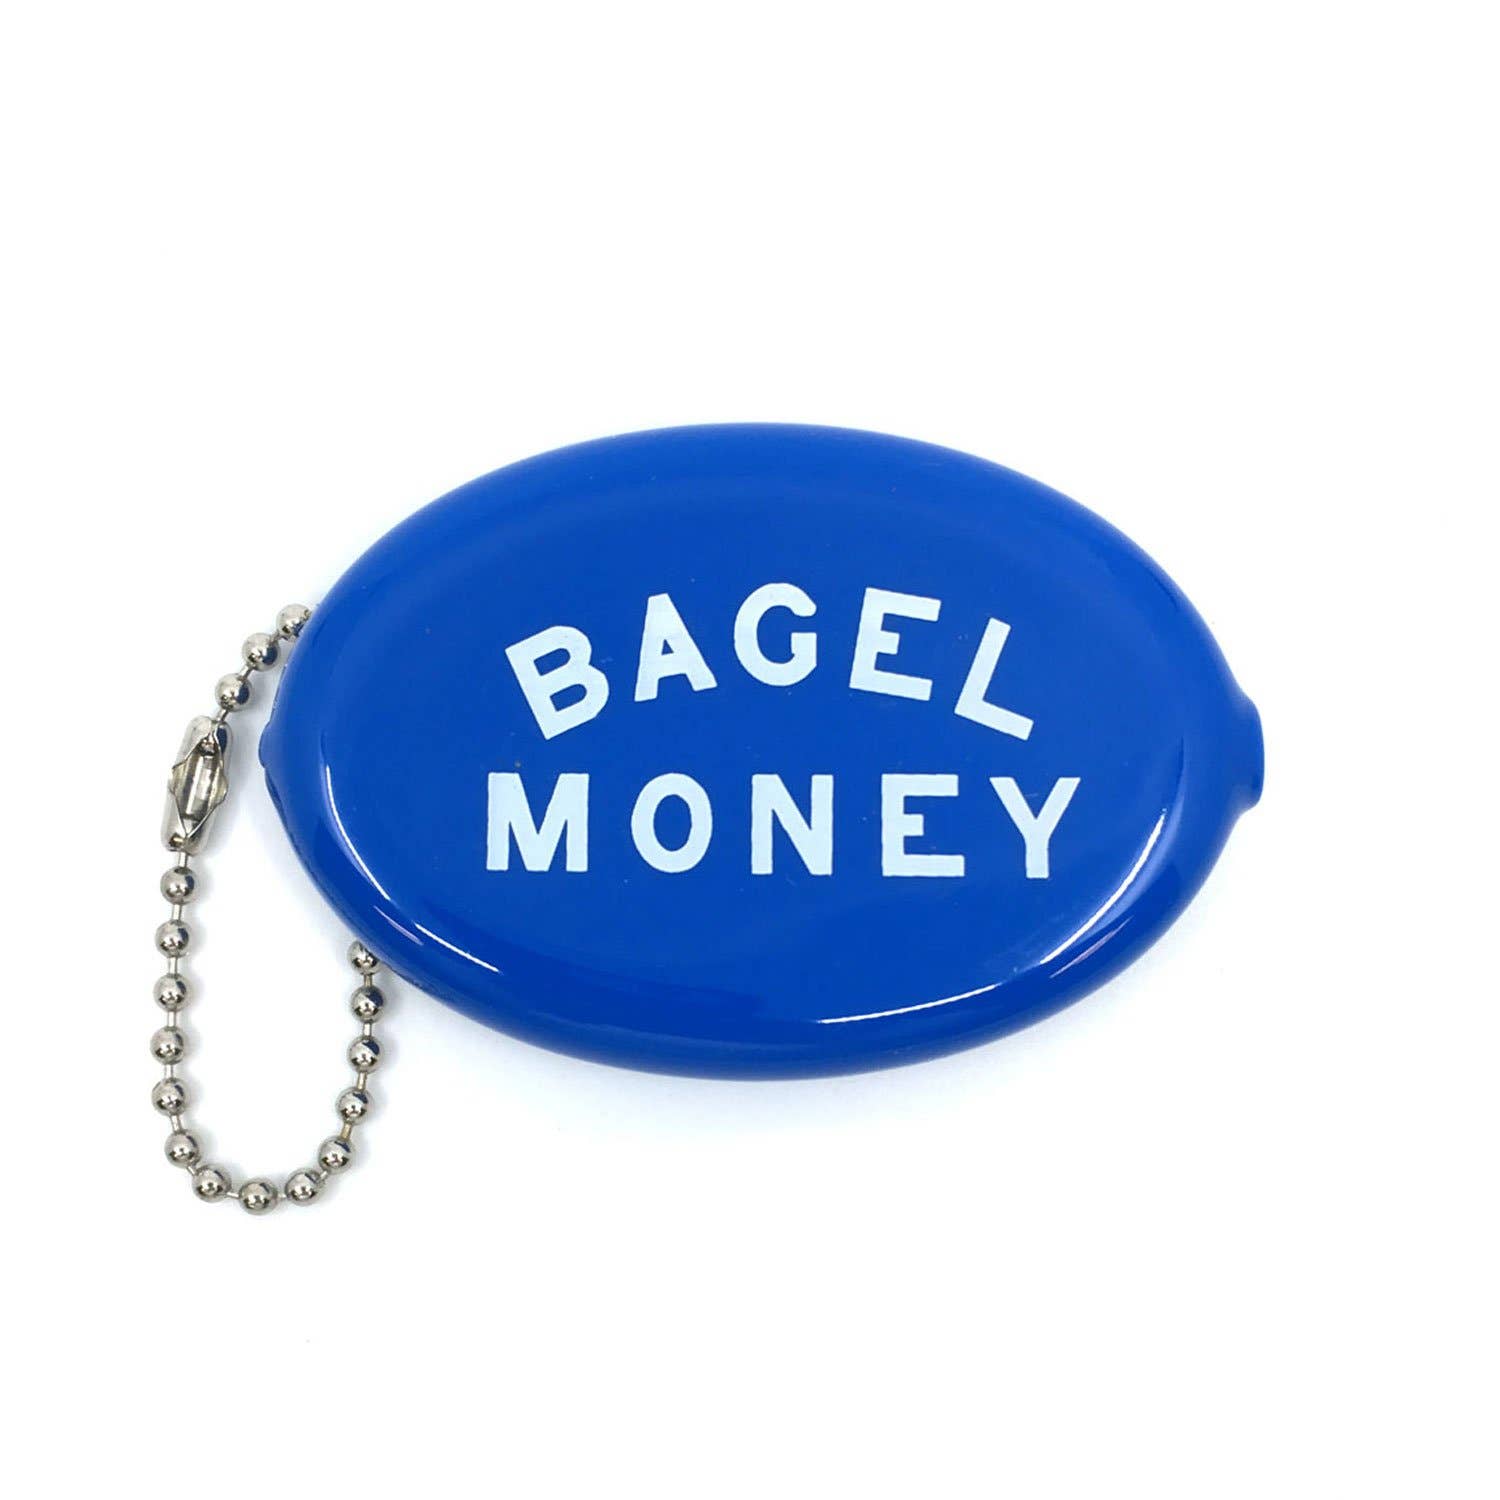 Bagel Money